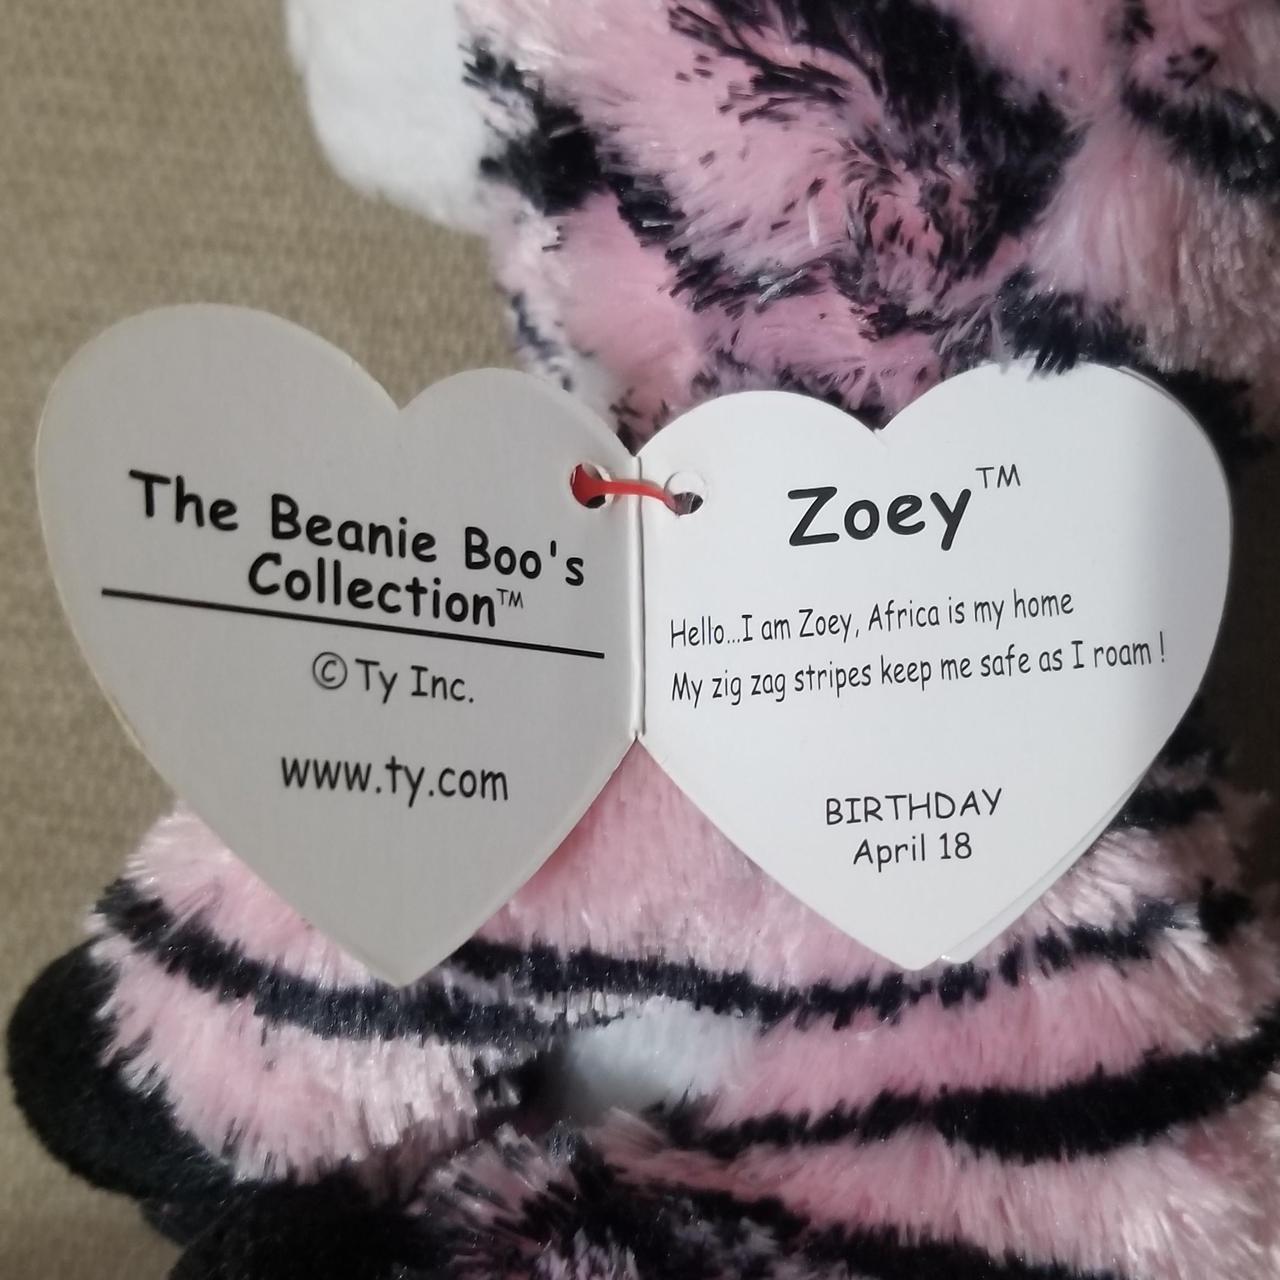 Zoey Beanie Boo (Zebra), Birthday April 18th, Brand